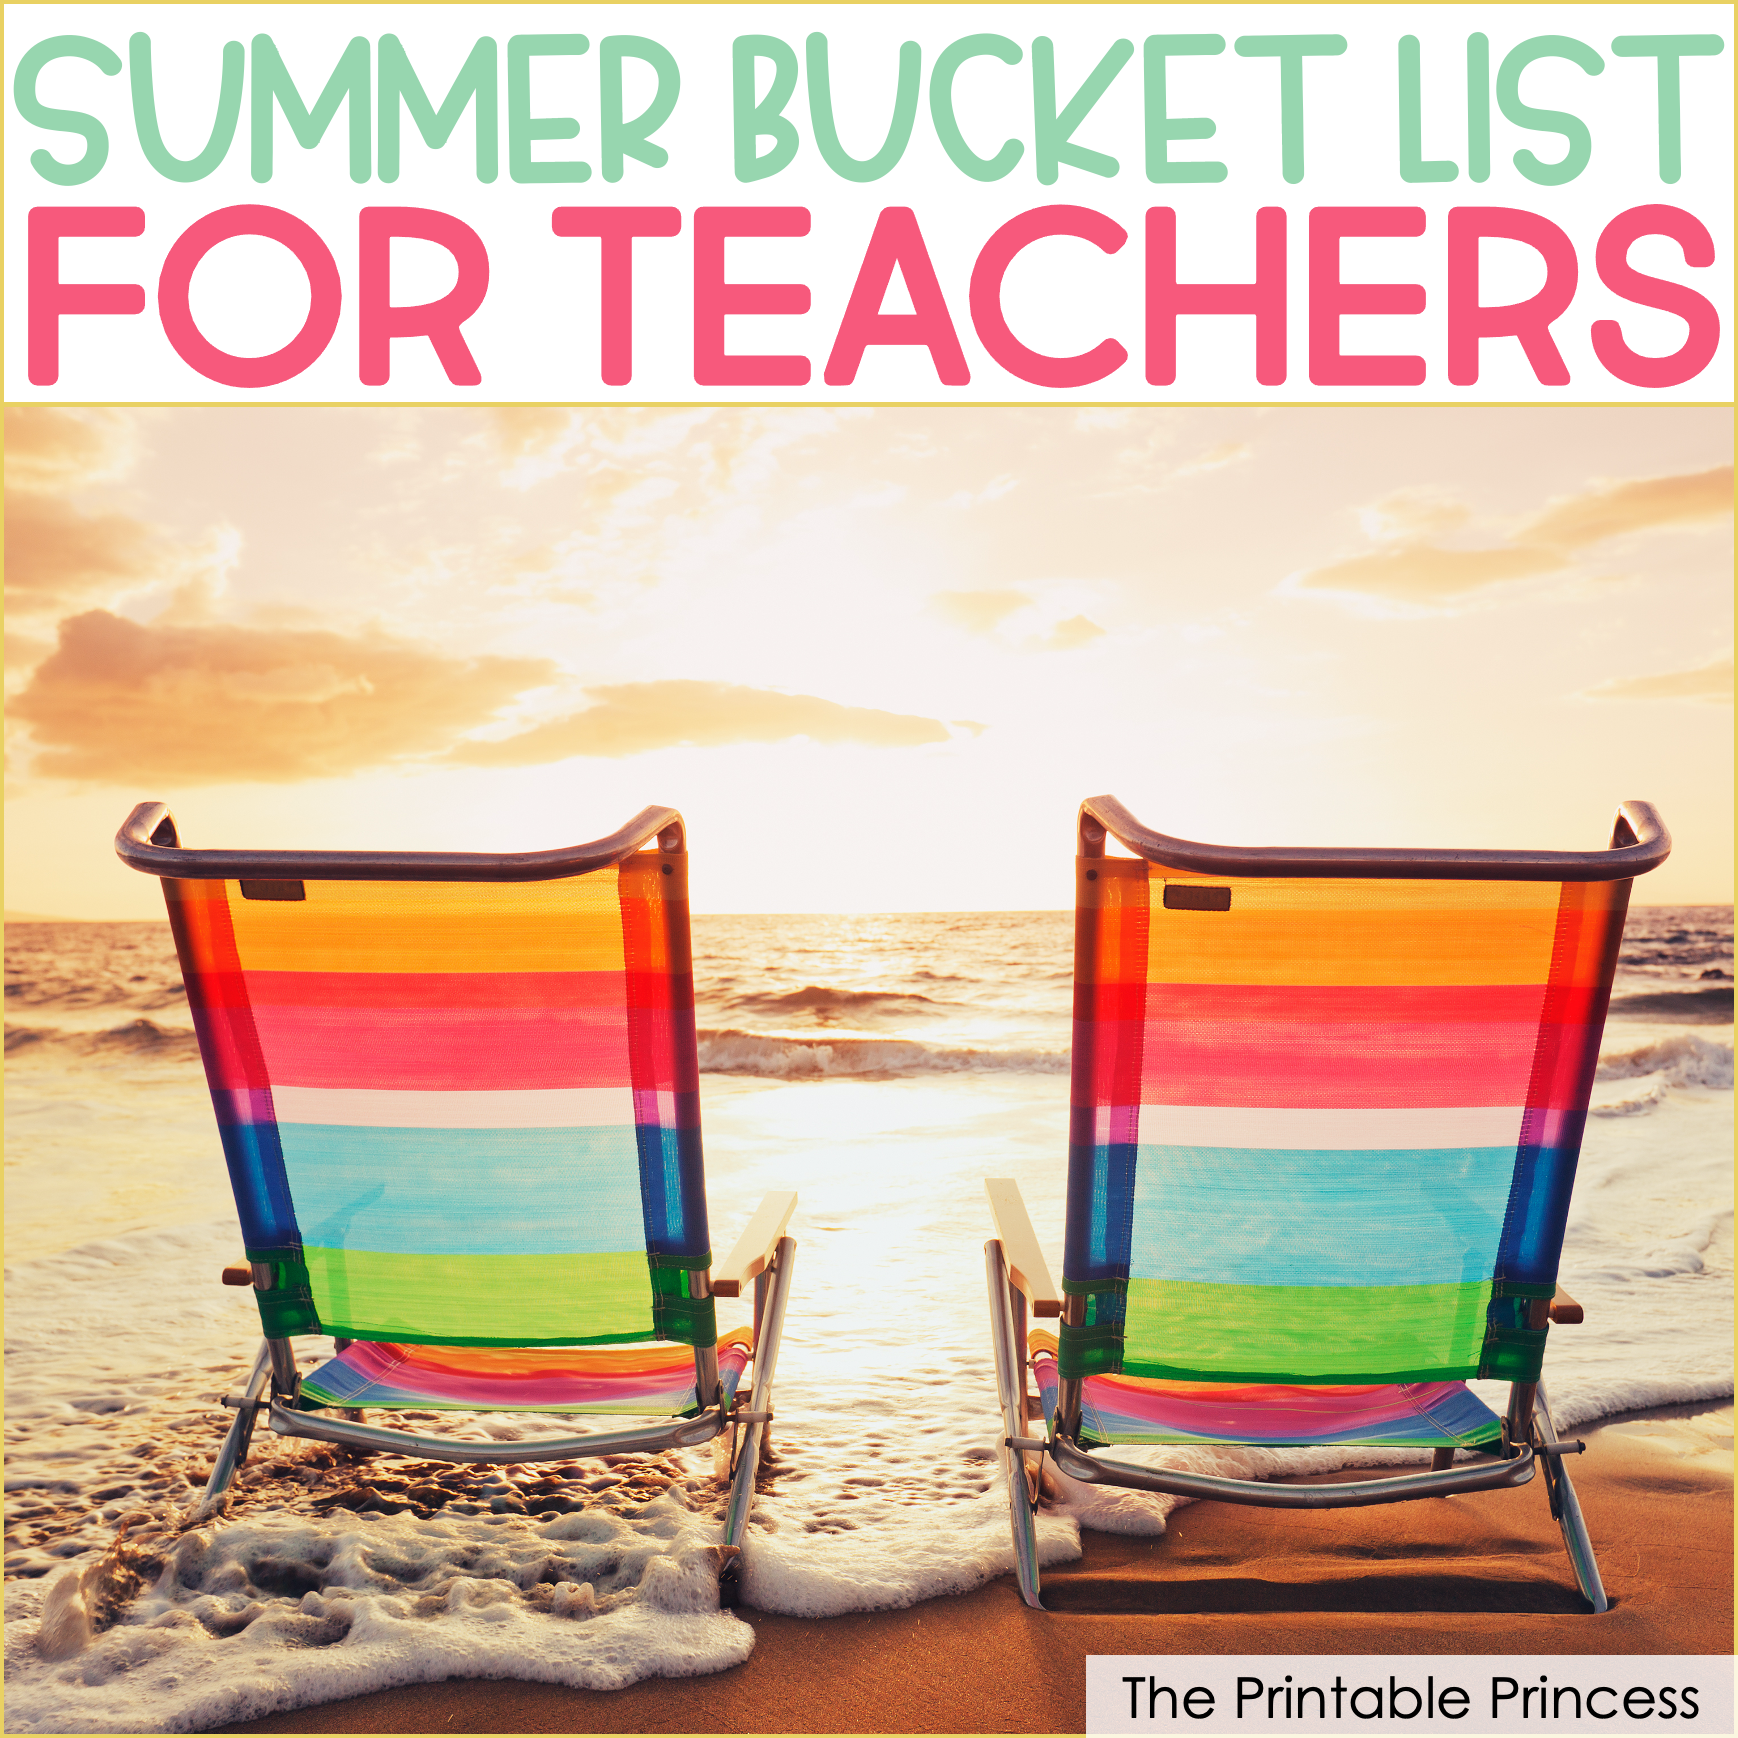 Summer Bucket List for Teachers